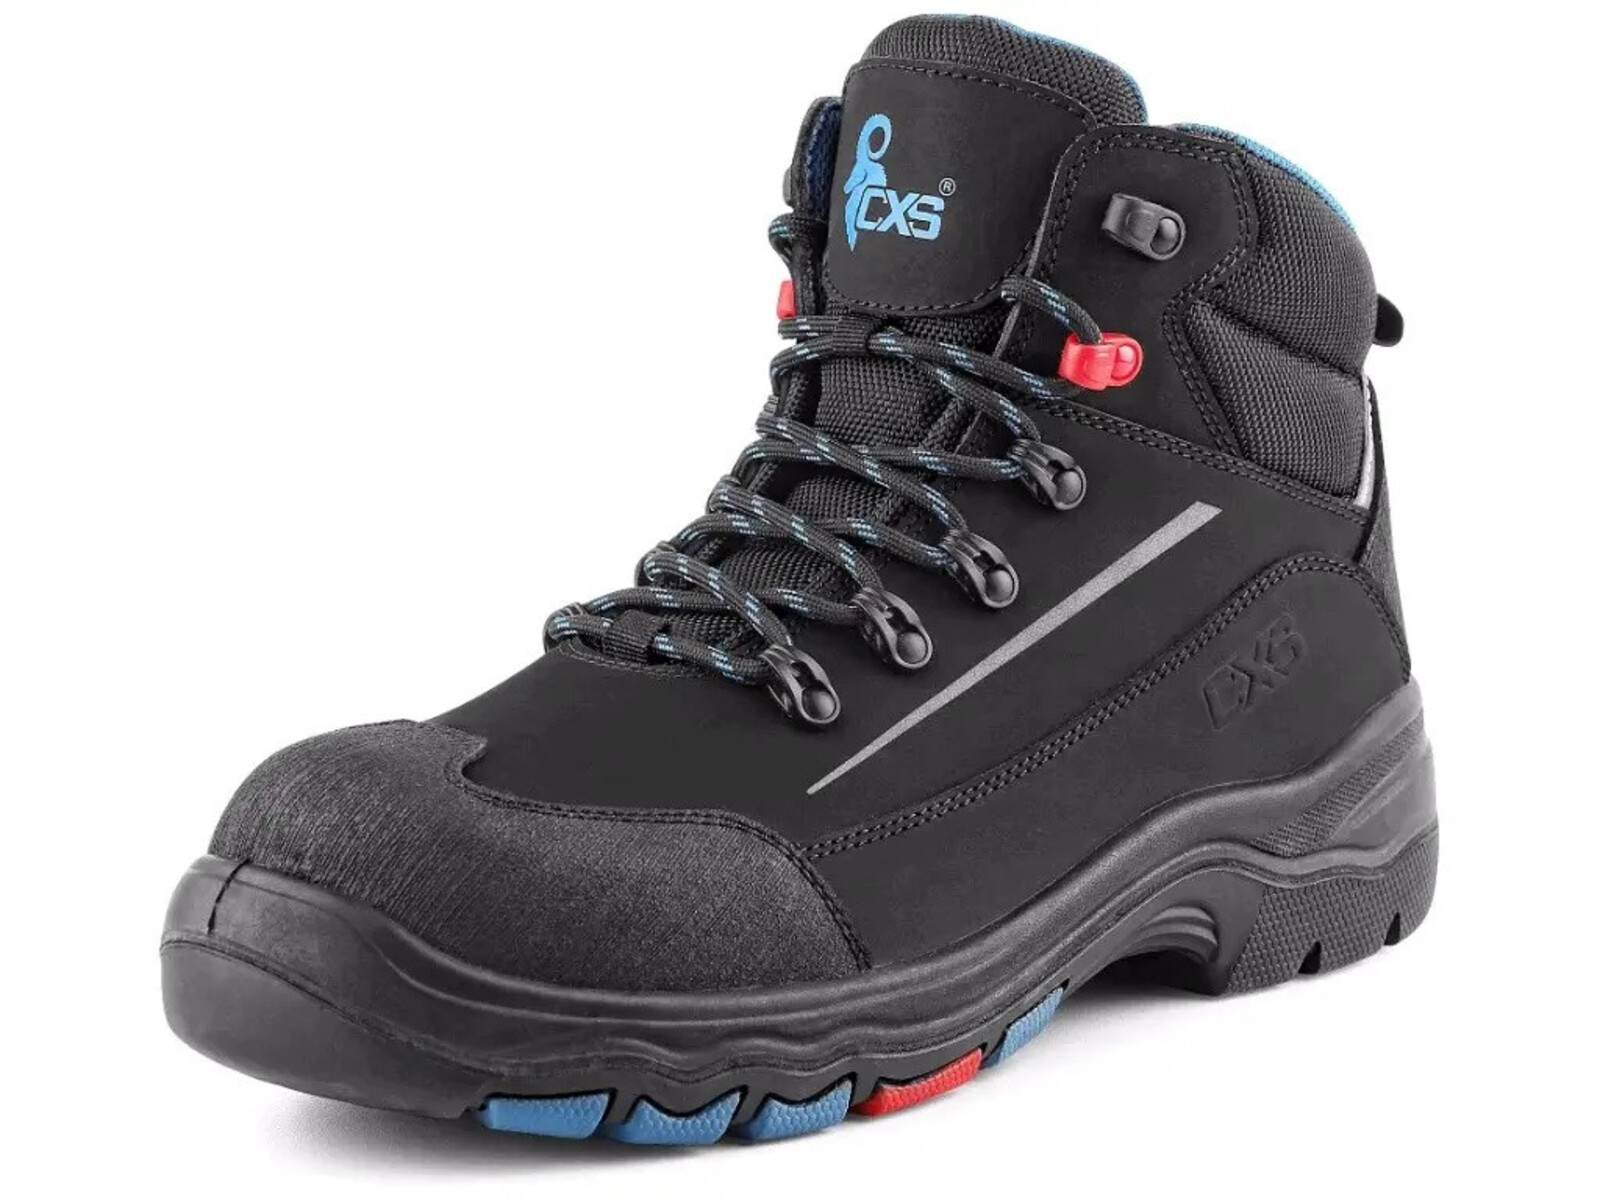 Bezpečnostná členková obuv CXS Land Senja S3S FO HRO SC SR - veľkosť: 48, farba: čierna/modrá